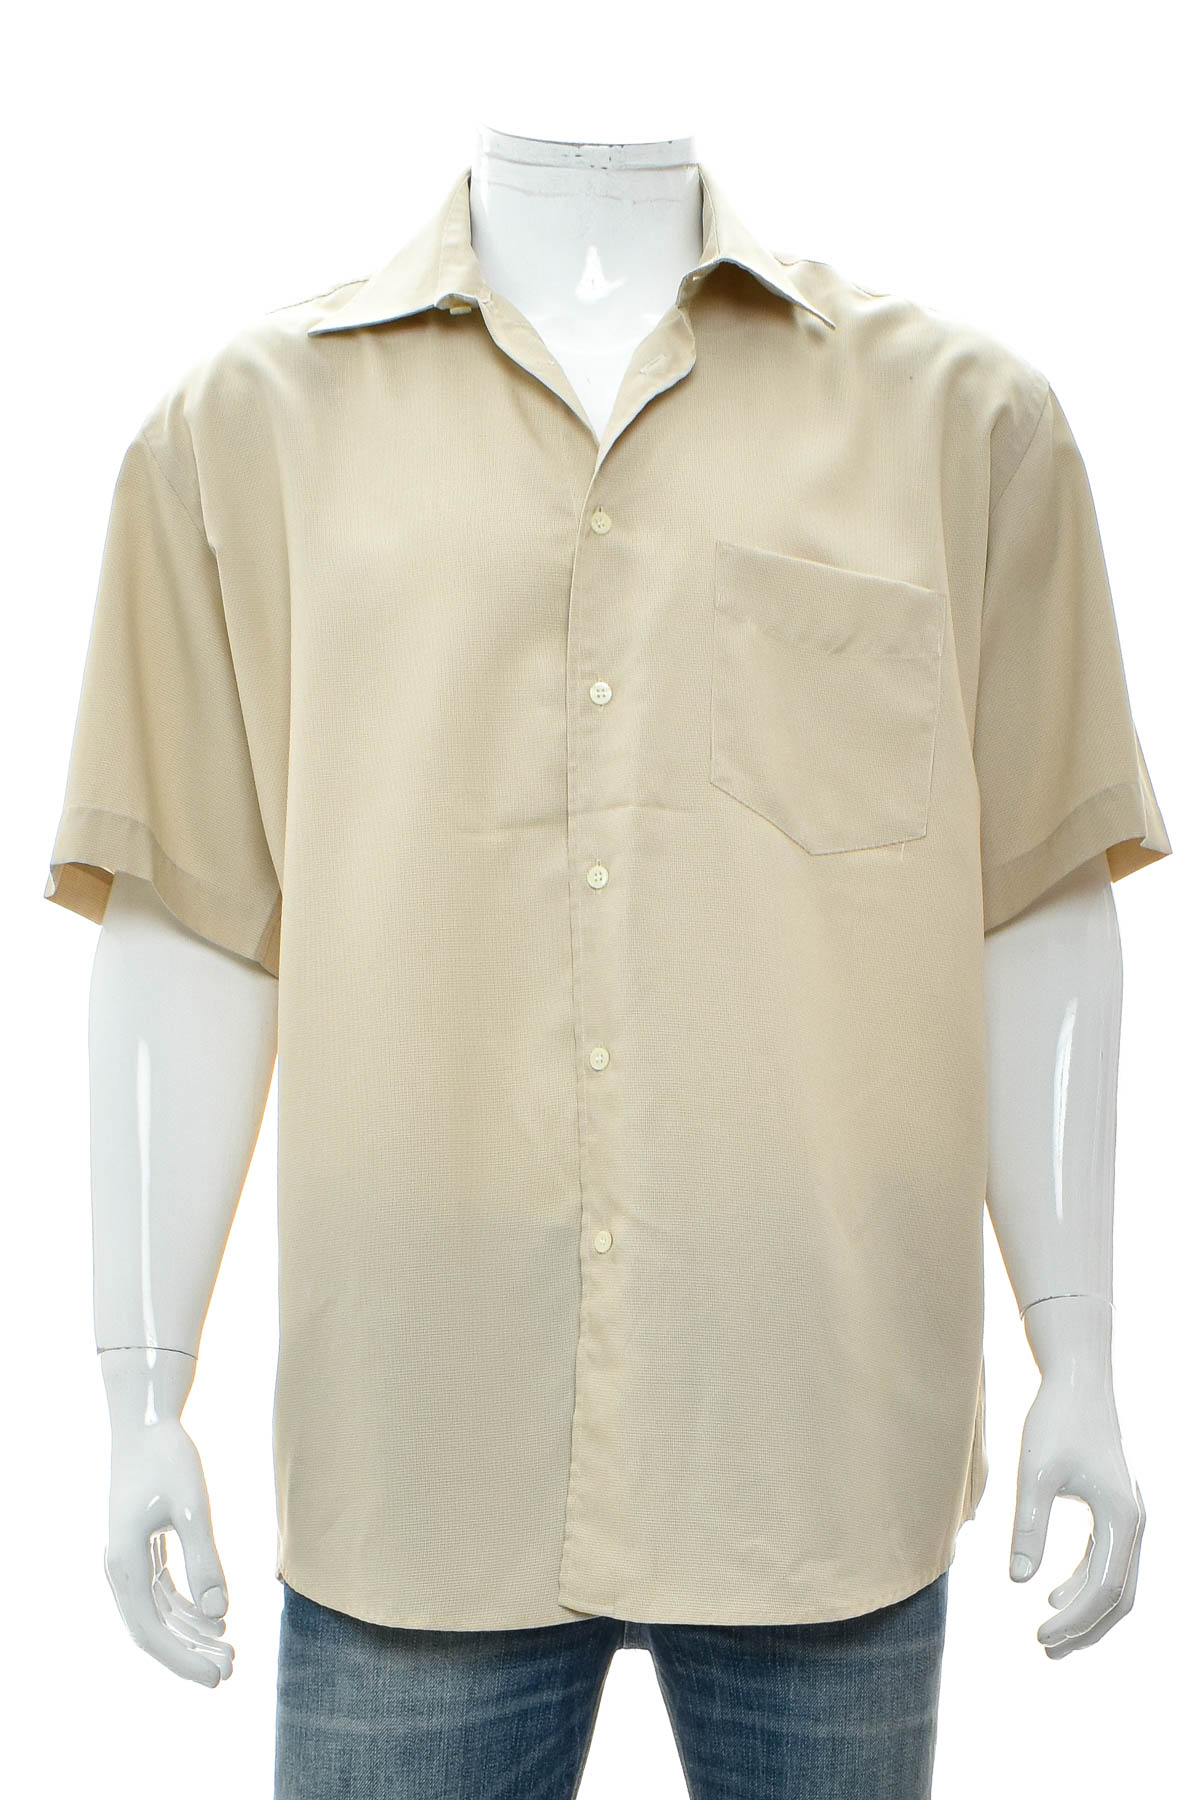 Ανδρικό πουκάμισο - Gilberto - 0